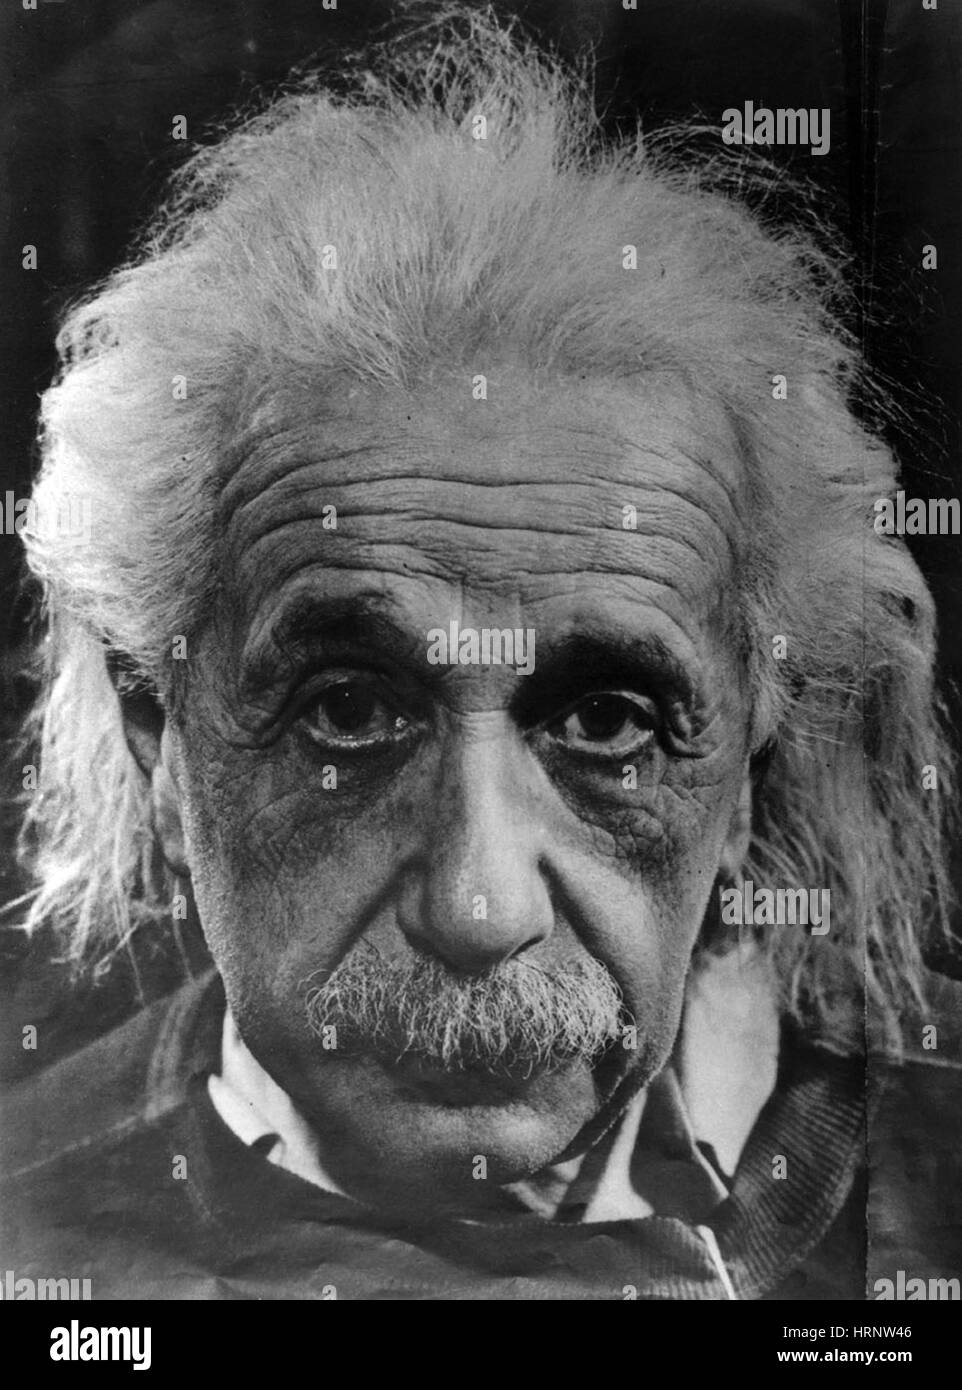 Albert Einstein (14 mars 1879 - 18 avril 1955) était un physicien théorique. Il a développé la théorie générale de la relativité, l'un des deux piliers de la physique moderne. Il est surtout connu dans la culture populaire pour sa formule d'équivalence masse-énergie E  = mc2. Il a reçu le Prix Nobel de physique 1921 pour ses "services à la physique théorique, et en particulier pour sa découverte de la loi de l'effet photoélectrique". Banque D'Images